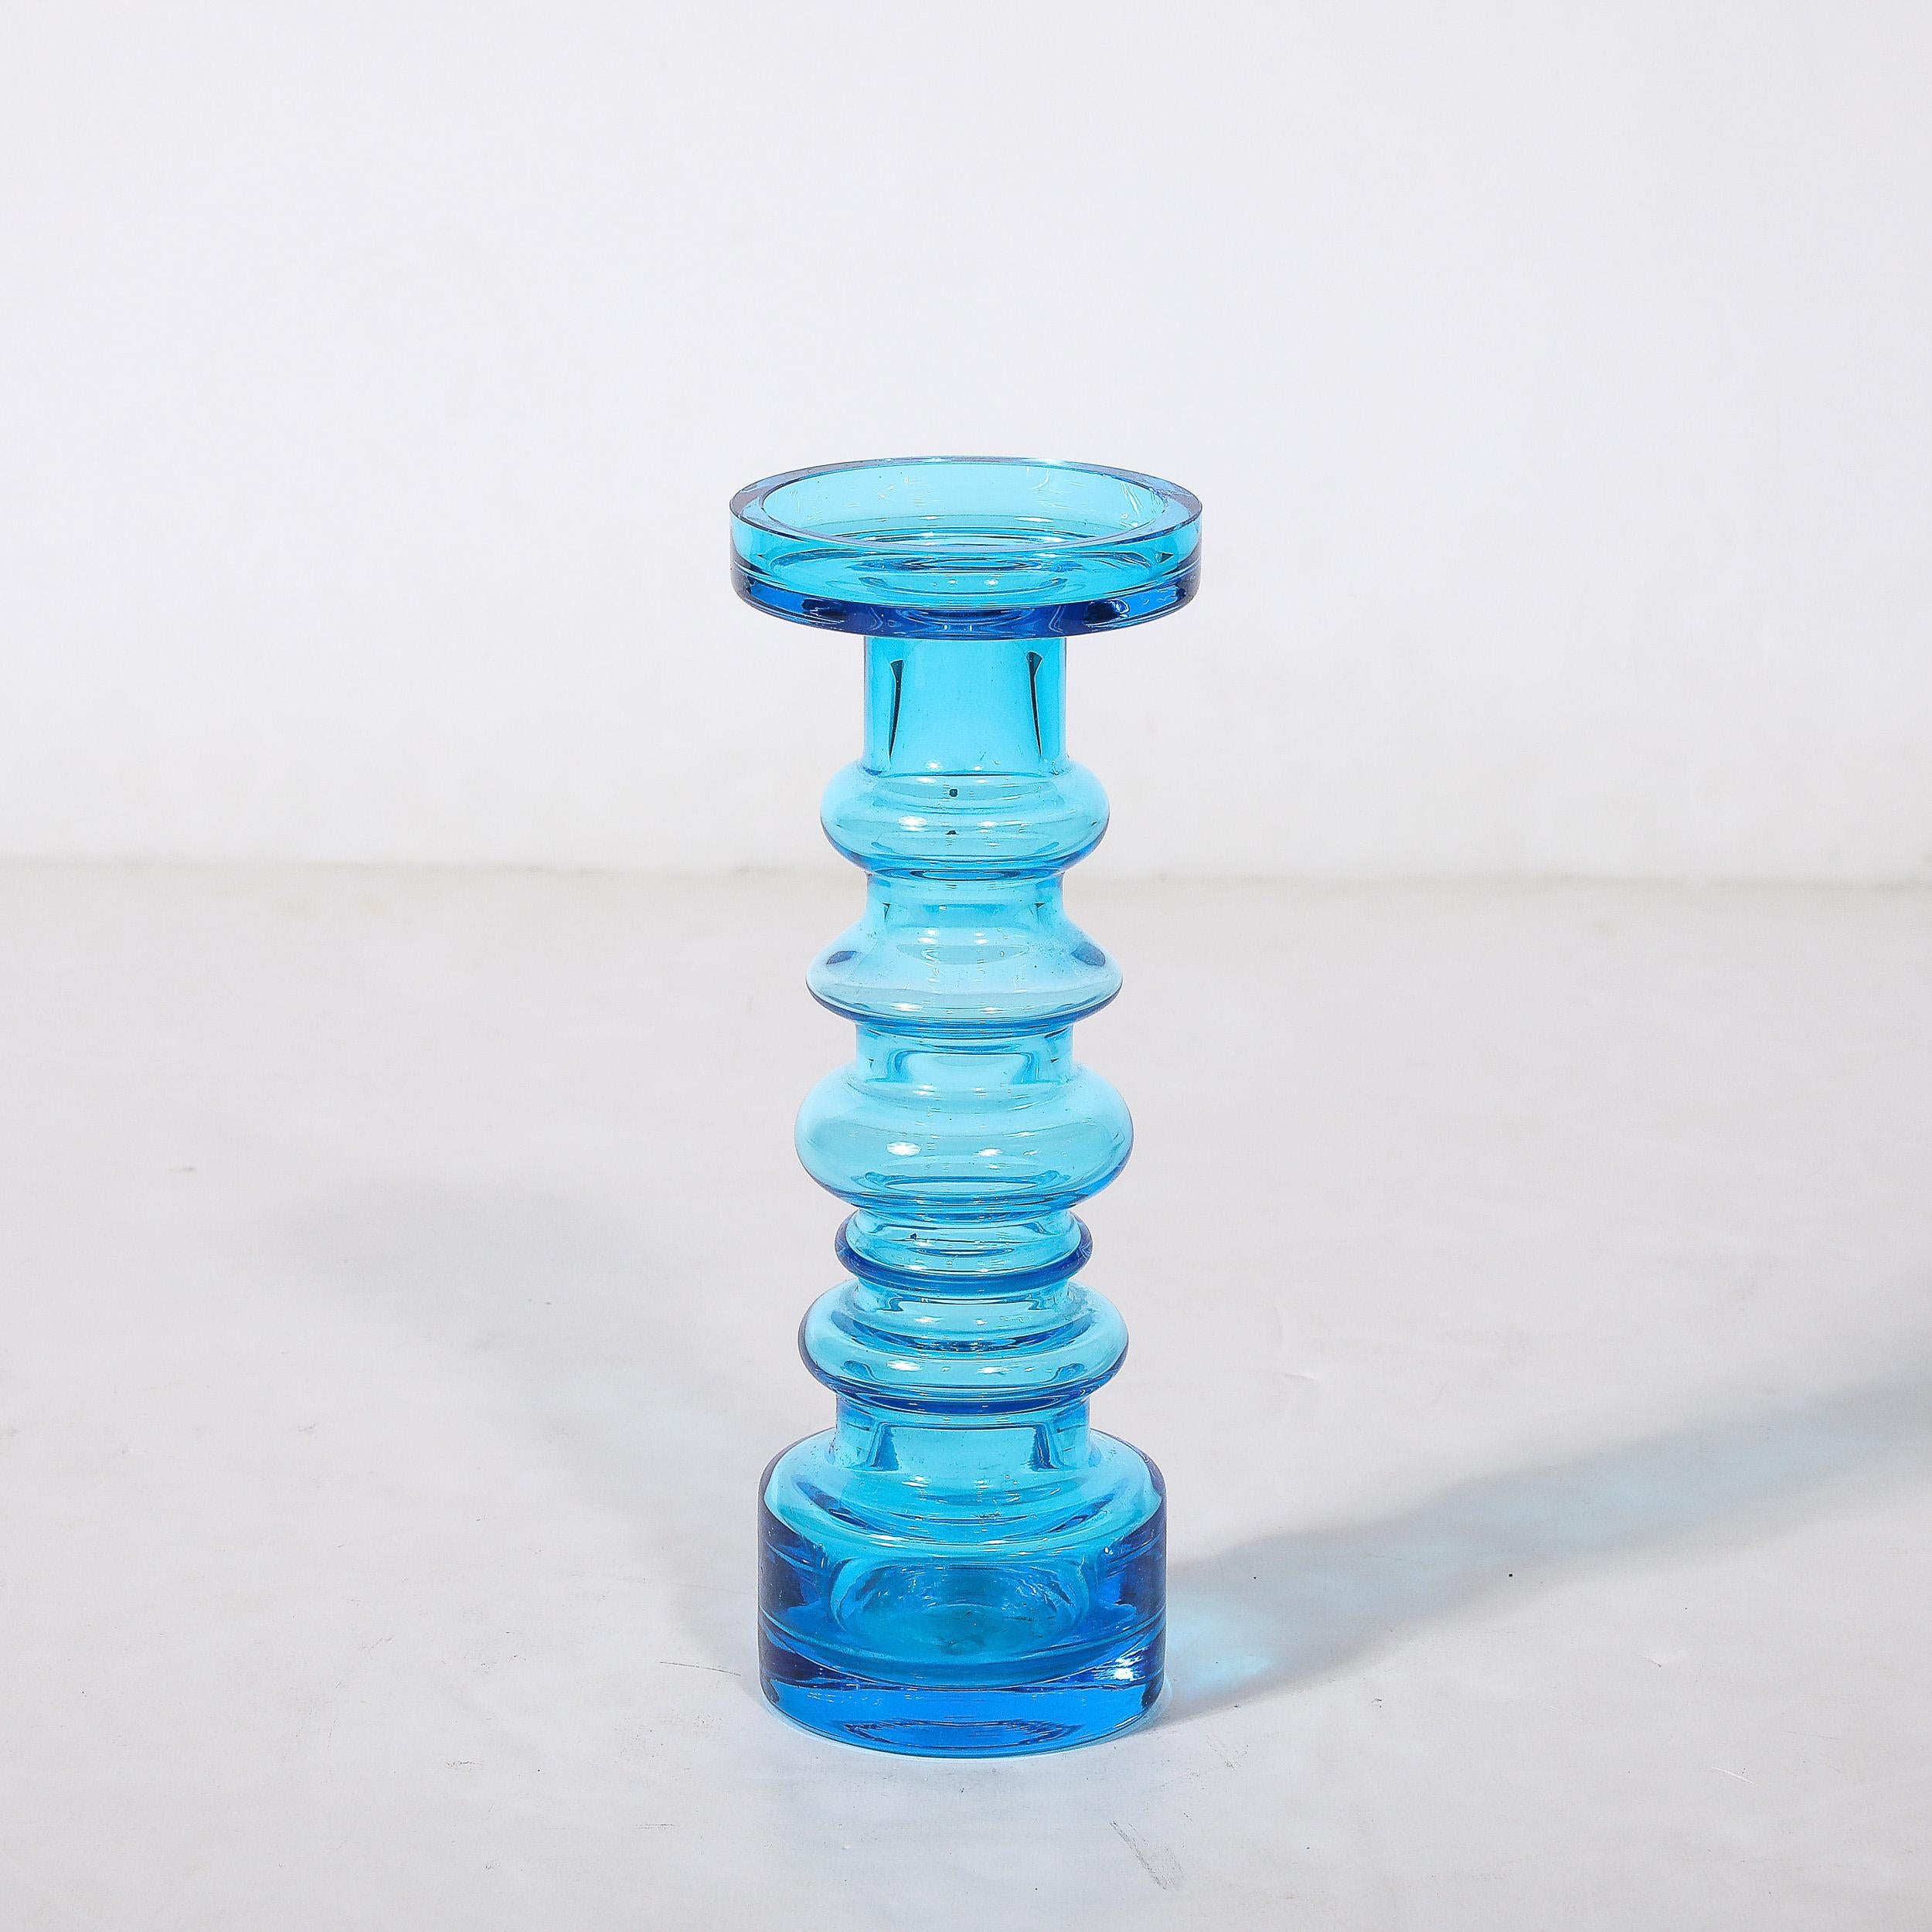 Diese schöne Vase aus mundgeblasenem blauem Glas in Form einer Balustrade aus der Mitte des Jahrhunderts stammt von Oiva Toikka aus Finnland, ca. 1960. Mit einer mehrstufigen Silhouette in Form einer Balustrade in einem schönen durchscheinenden